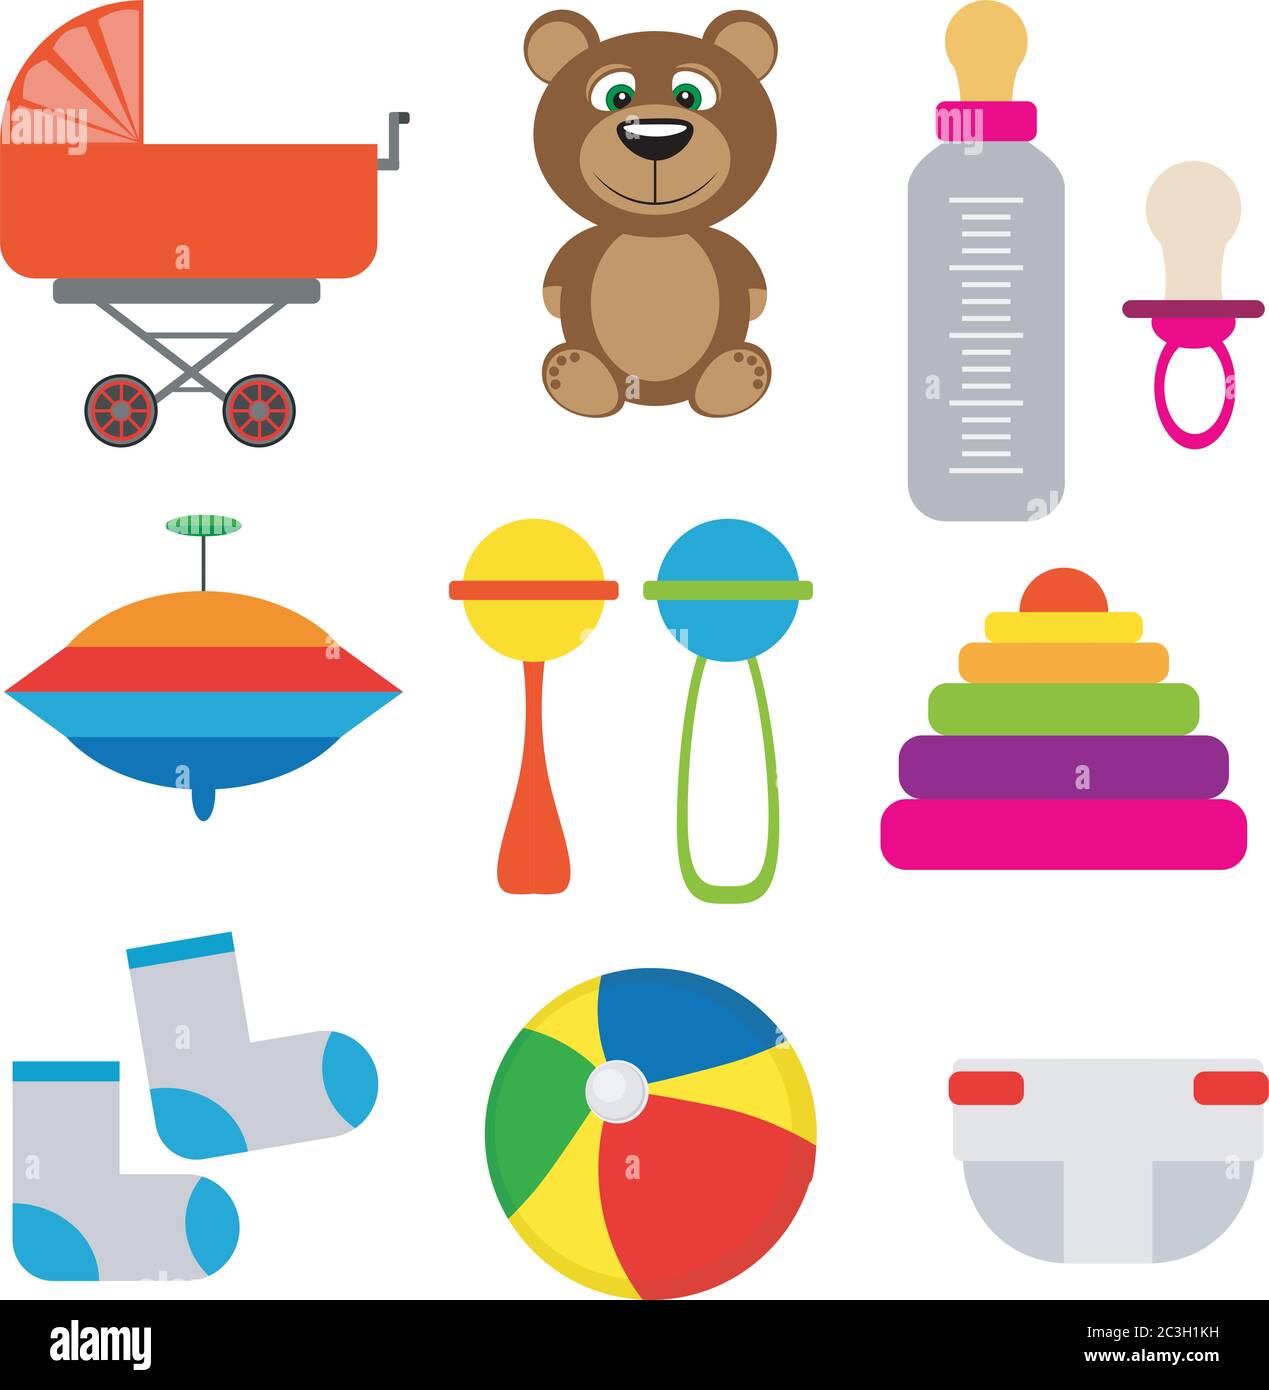 Kit bébé : poussette, biberon, chaussettes, jouets. Illustration vectorielle de style plat sur fond blanc isolé. Illustration de Vecteur